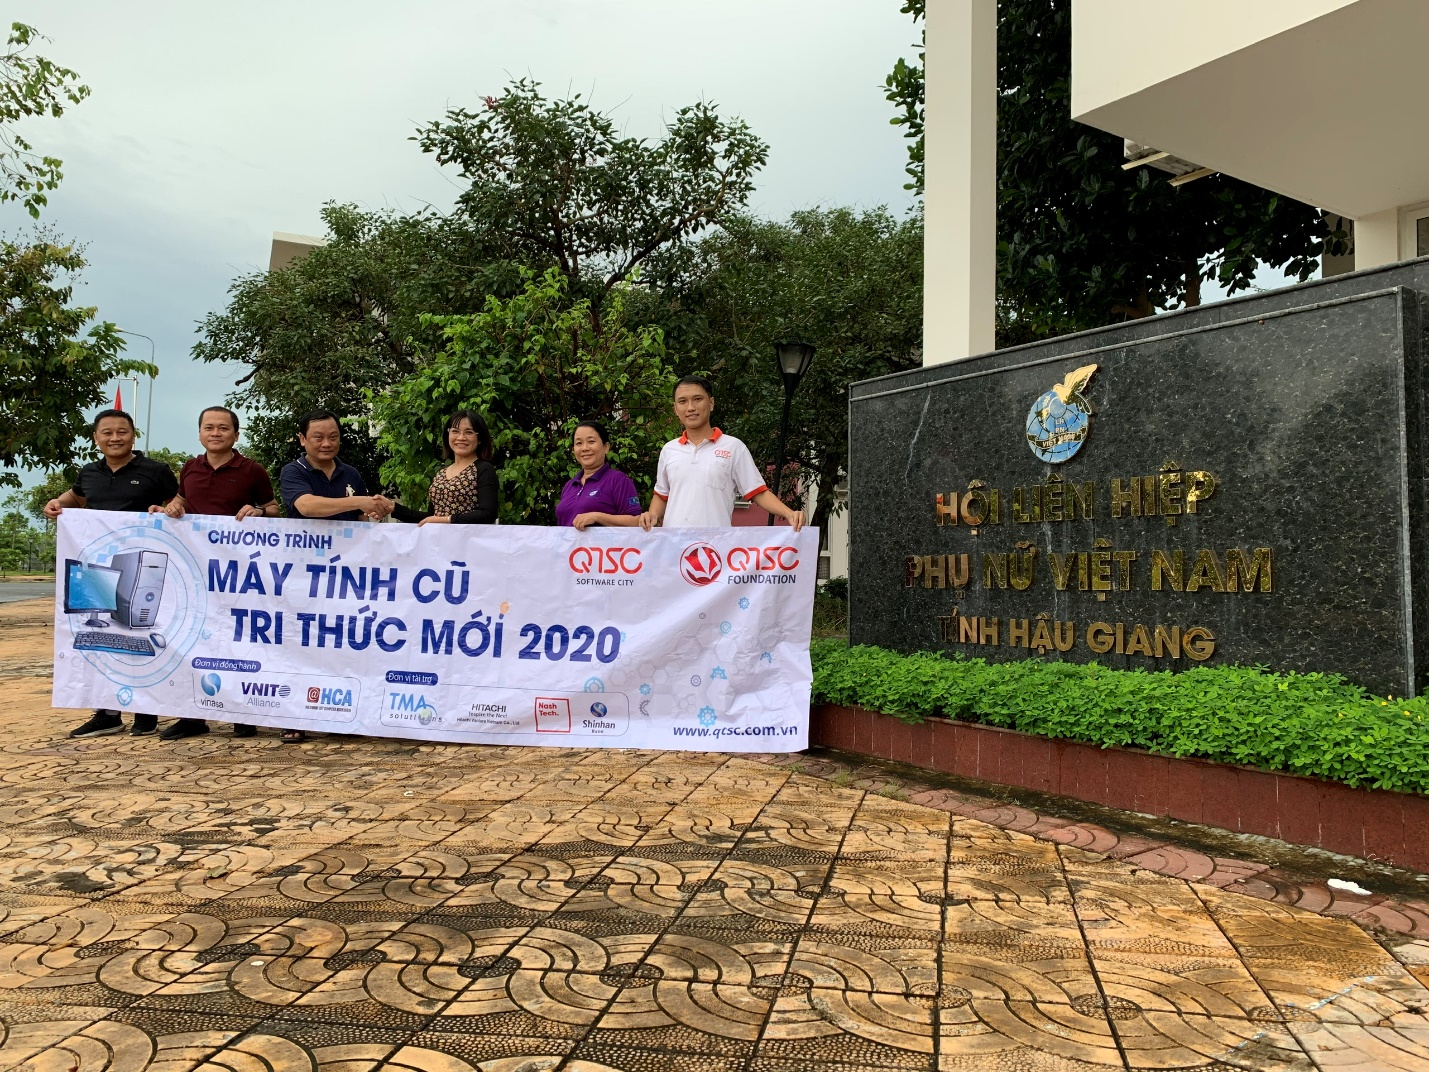 Hình 1: Đại diện Quỹ khuyến học QTSC chụp hình lưu niệm tại Hội Liên hiệp Phụ nữ Việt Nam tỉnh Hậu Giang